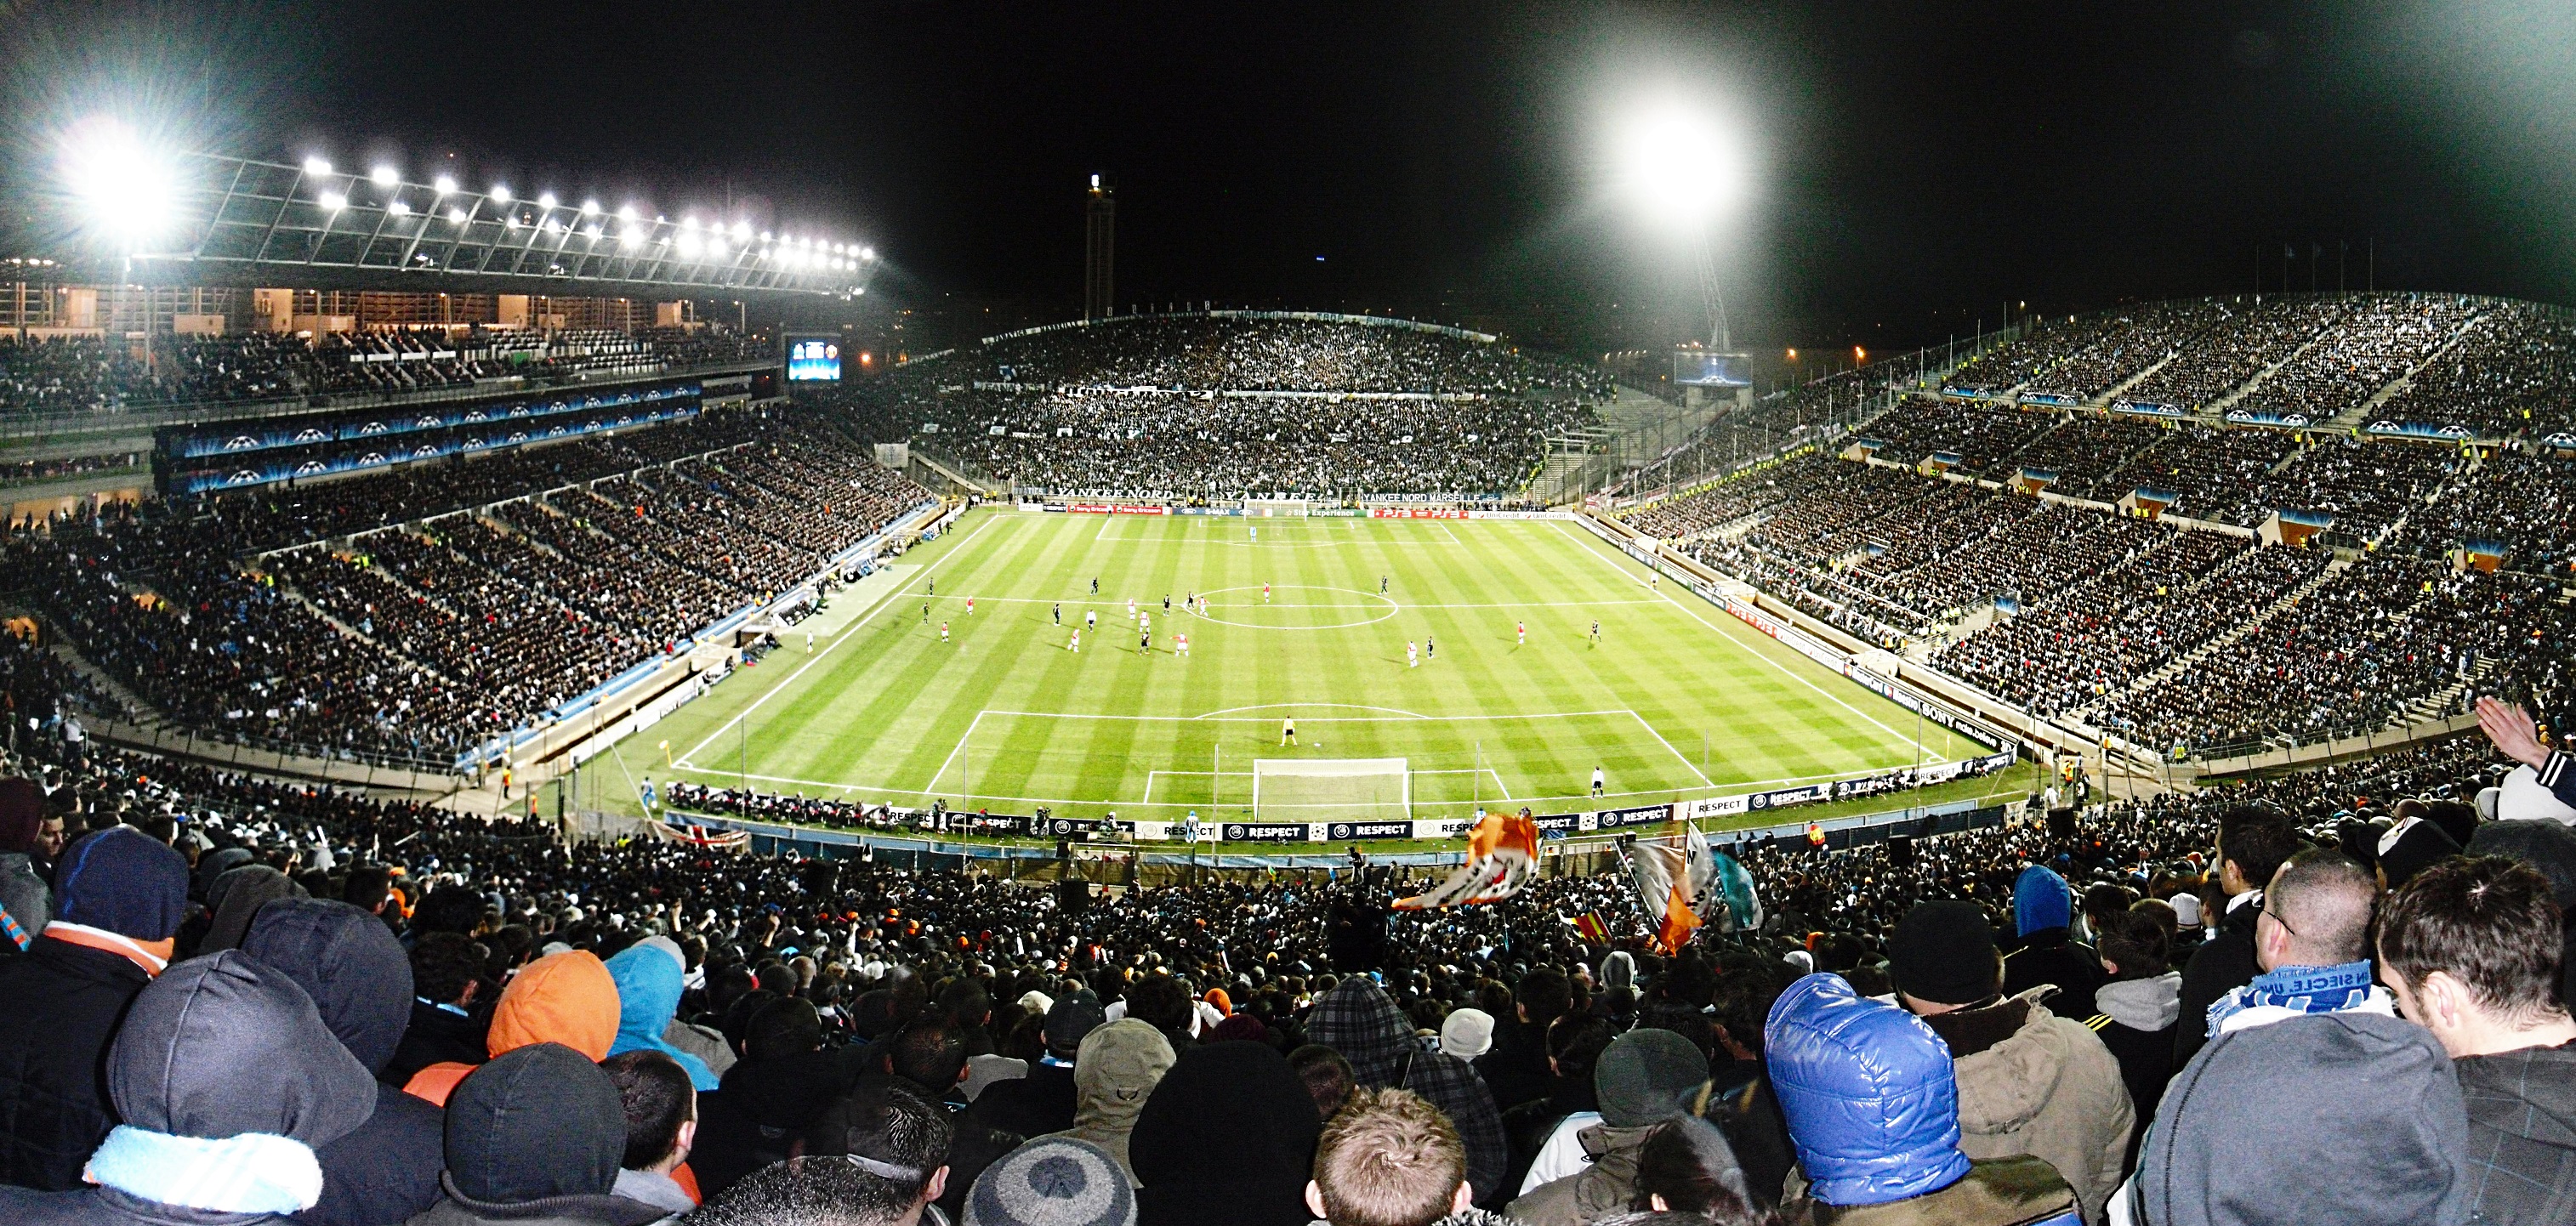 Stade Vélodrome skal blant annet huse en kvartfinale og en semifinale.